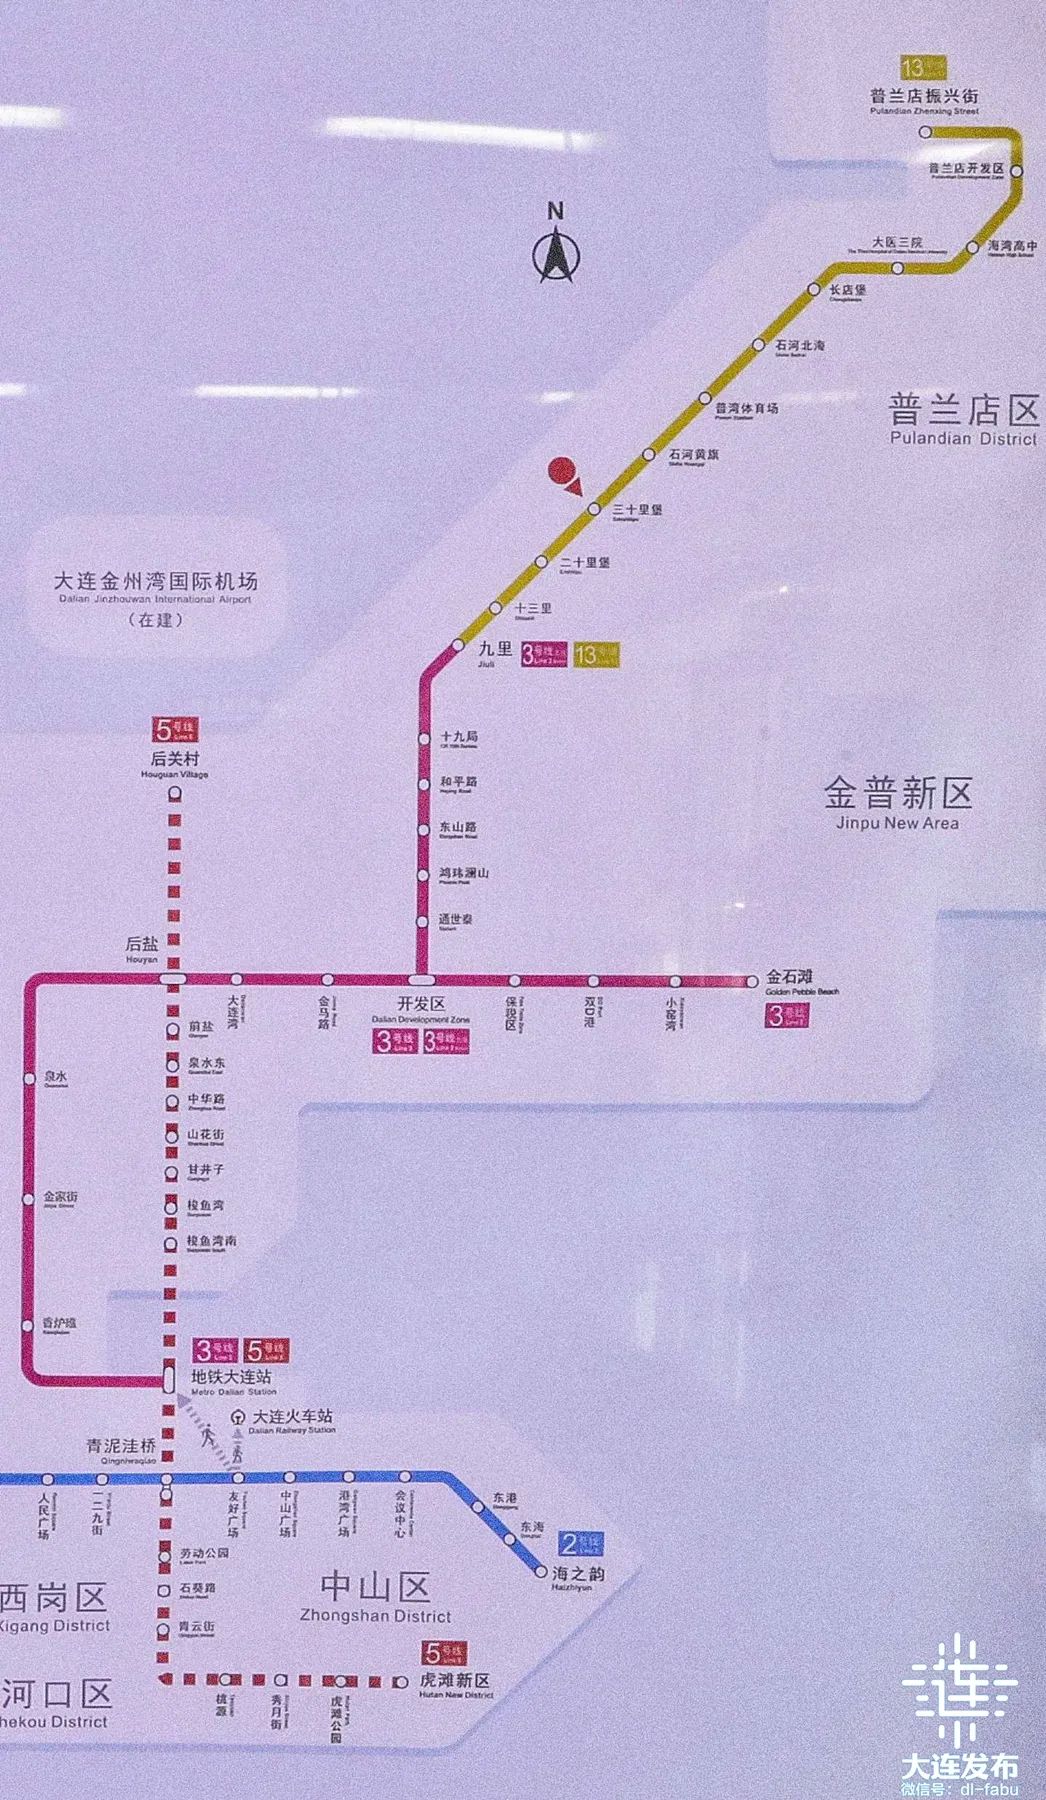 到达开发区后,可换乘地铁3号线正线列车去往地铁大连站和金石滩站方向